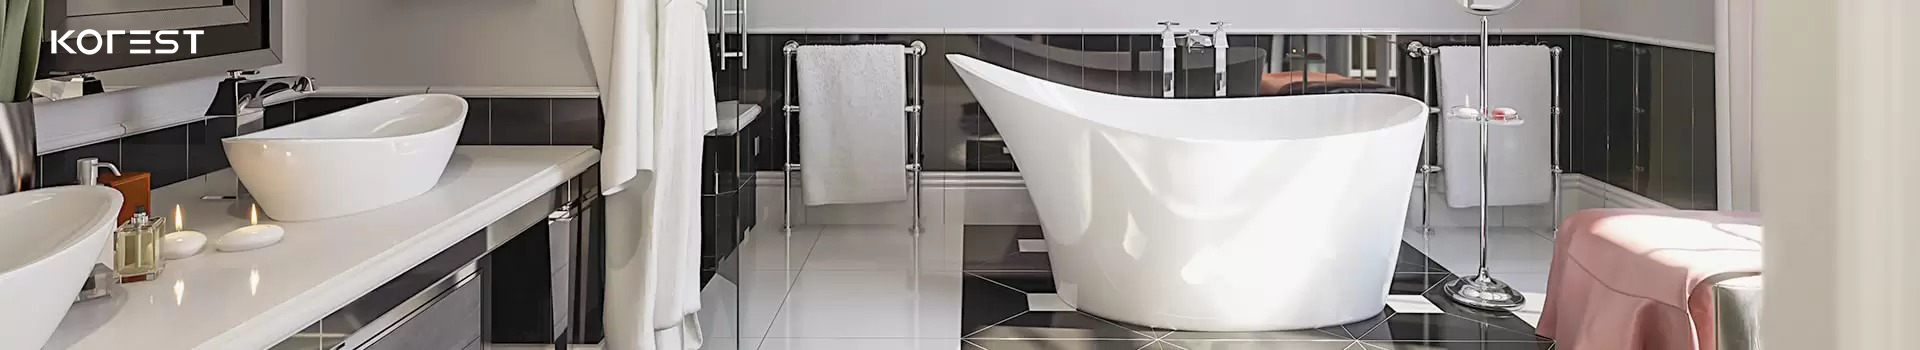 Cách lựa chọn combo thiết bị vệ sinh phù hợp với phòng tắm gia đình